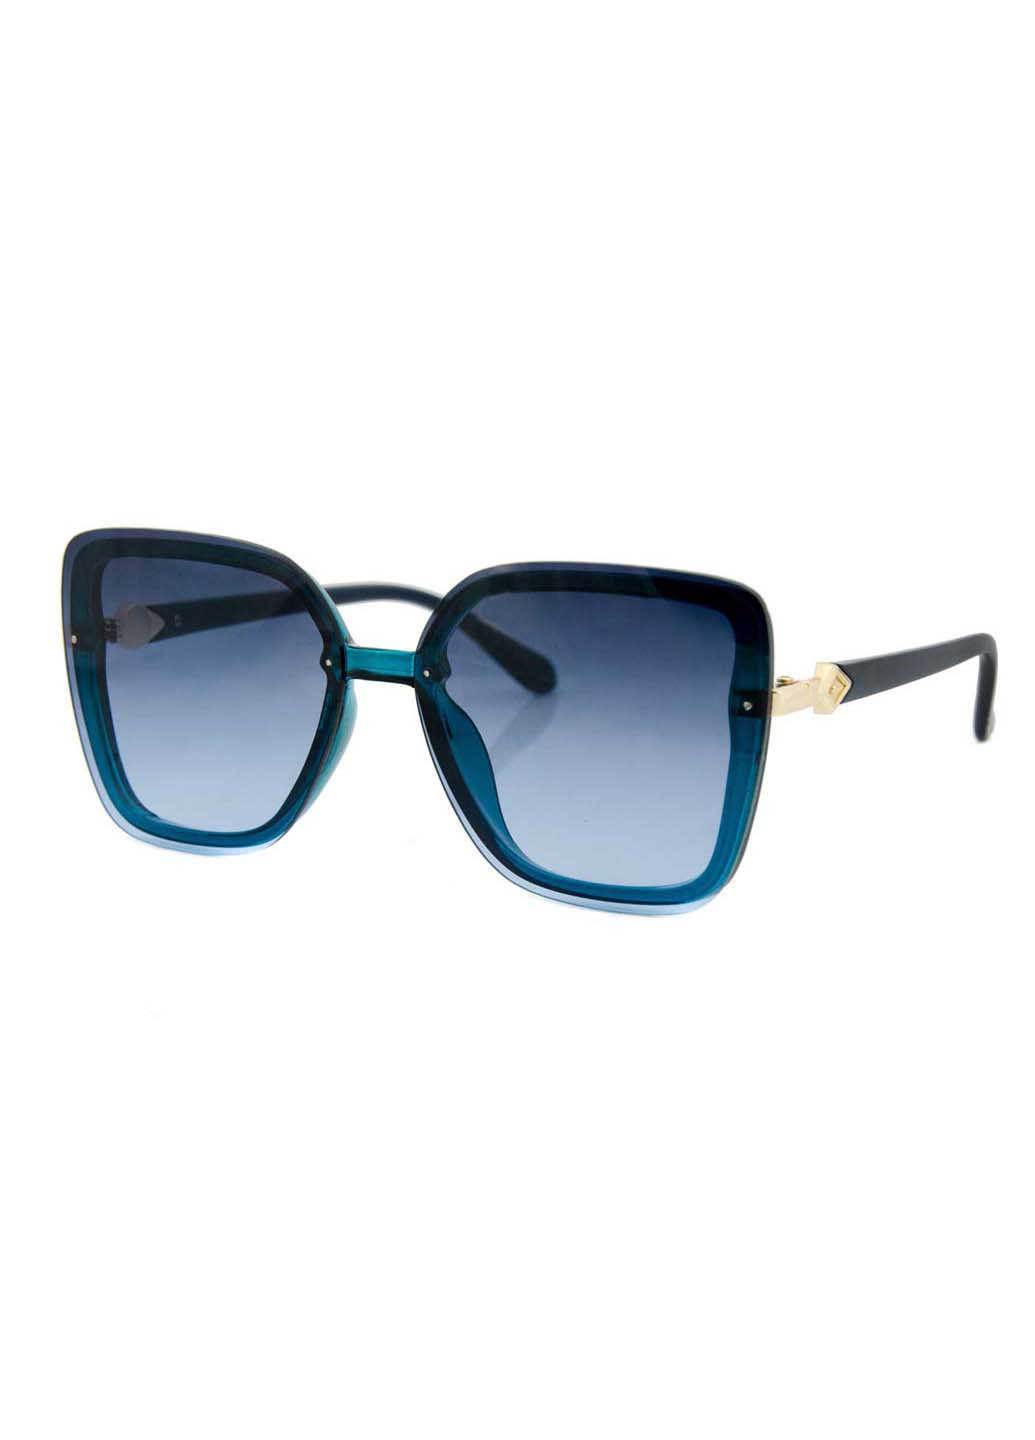 Сонцезахисні окуляри One size Sumwin сині